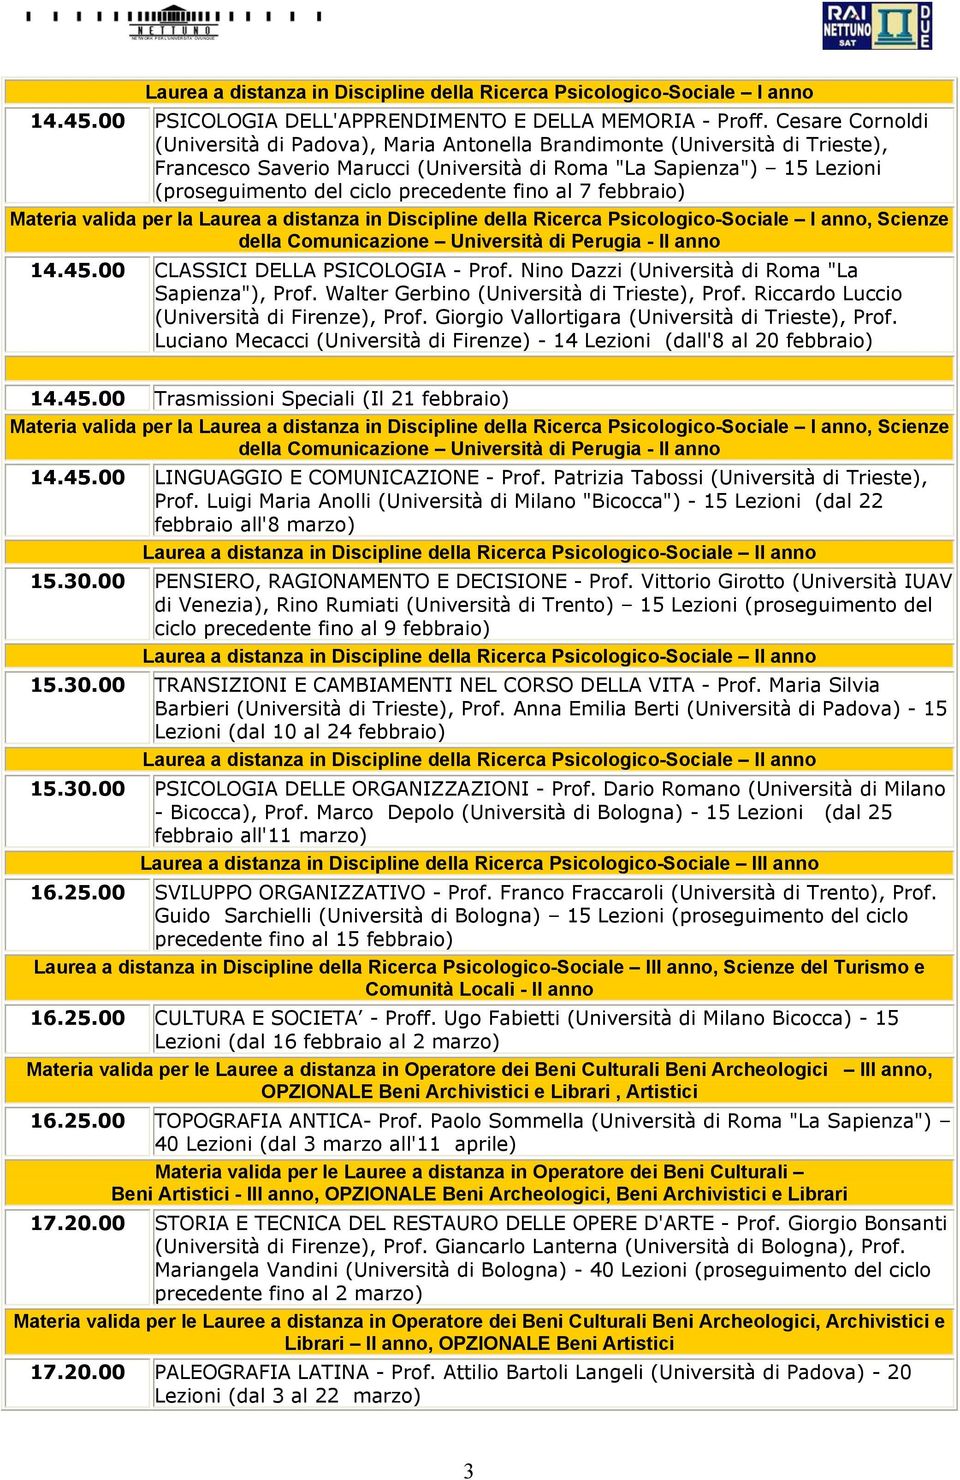 precedente fino al 7 febbraio) Materia valida per la Laurea a distanza in Discipline della Ricerca Psicologico-Sociale I anno, Scienze della Comunicazione Università di Perugia - II anno 14.45.